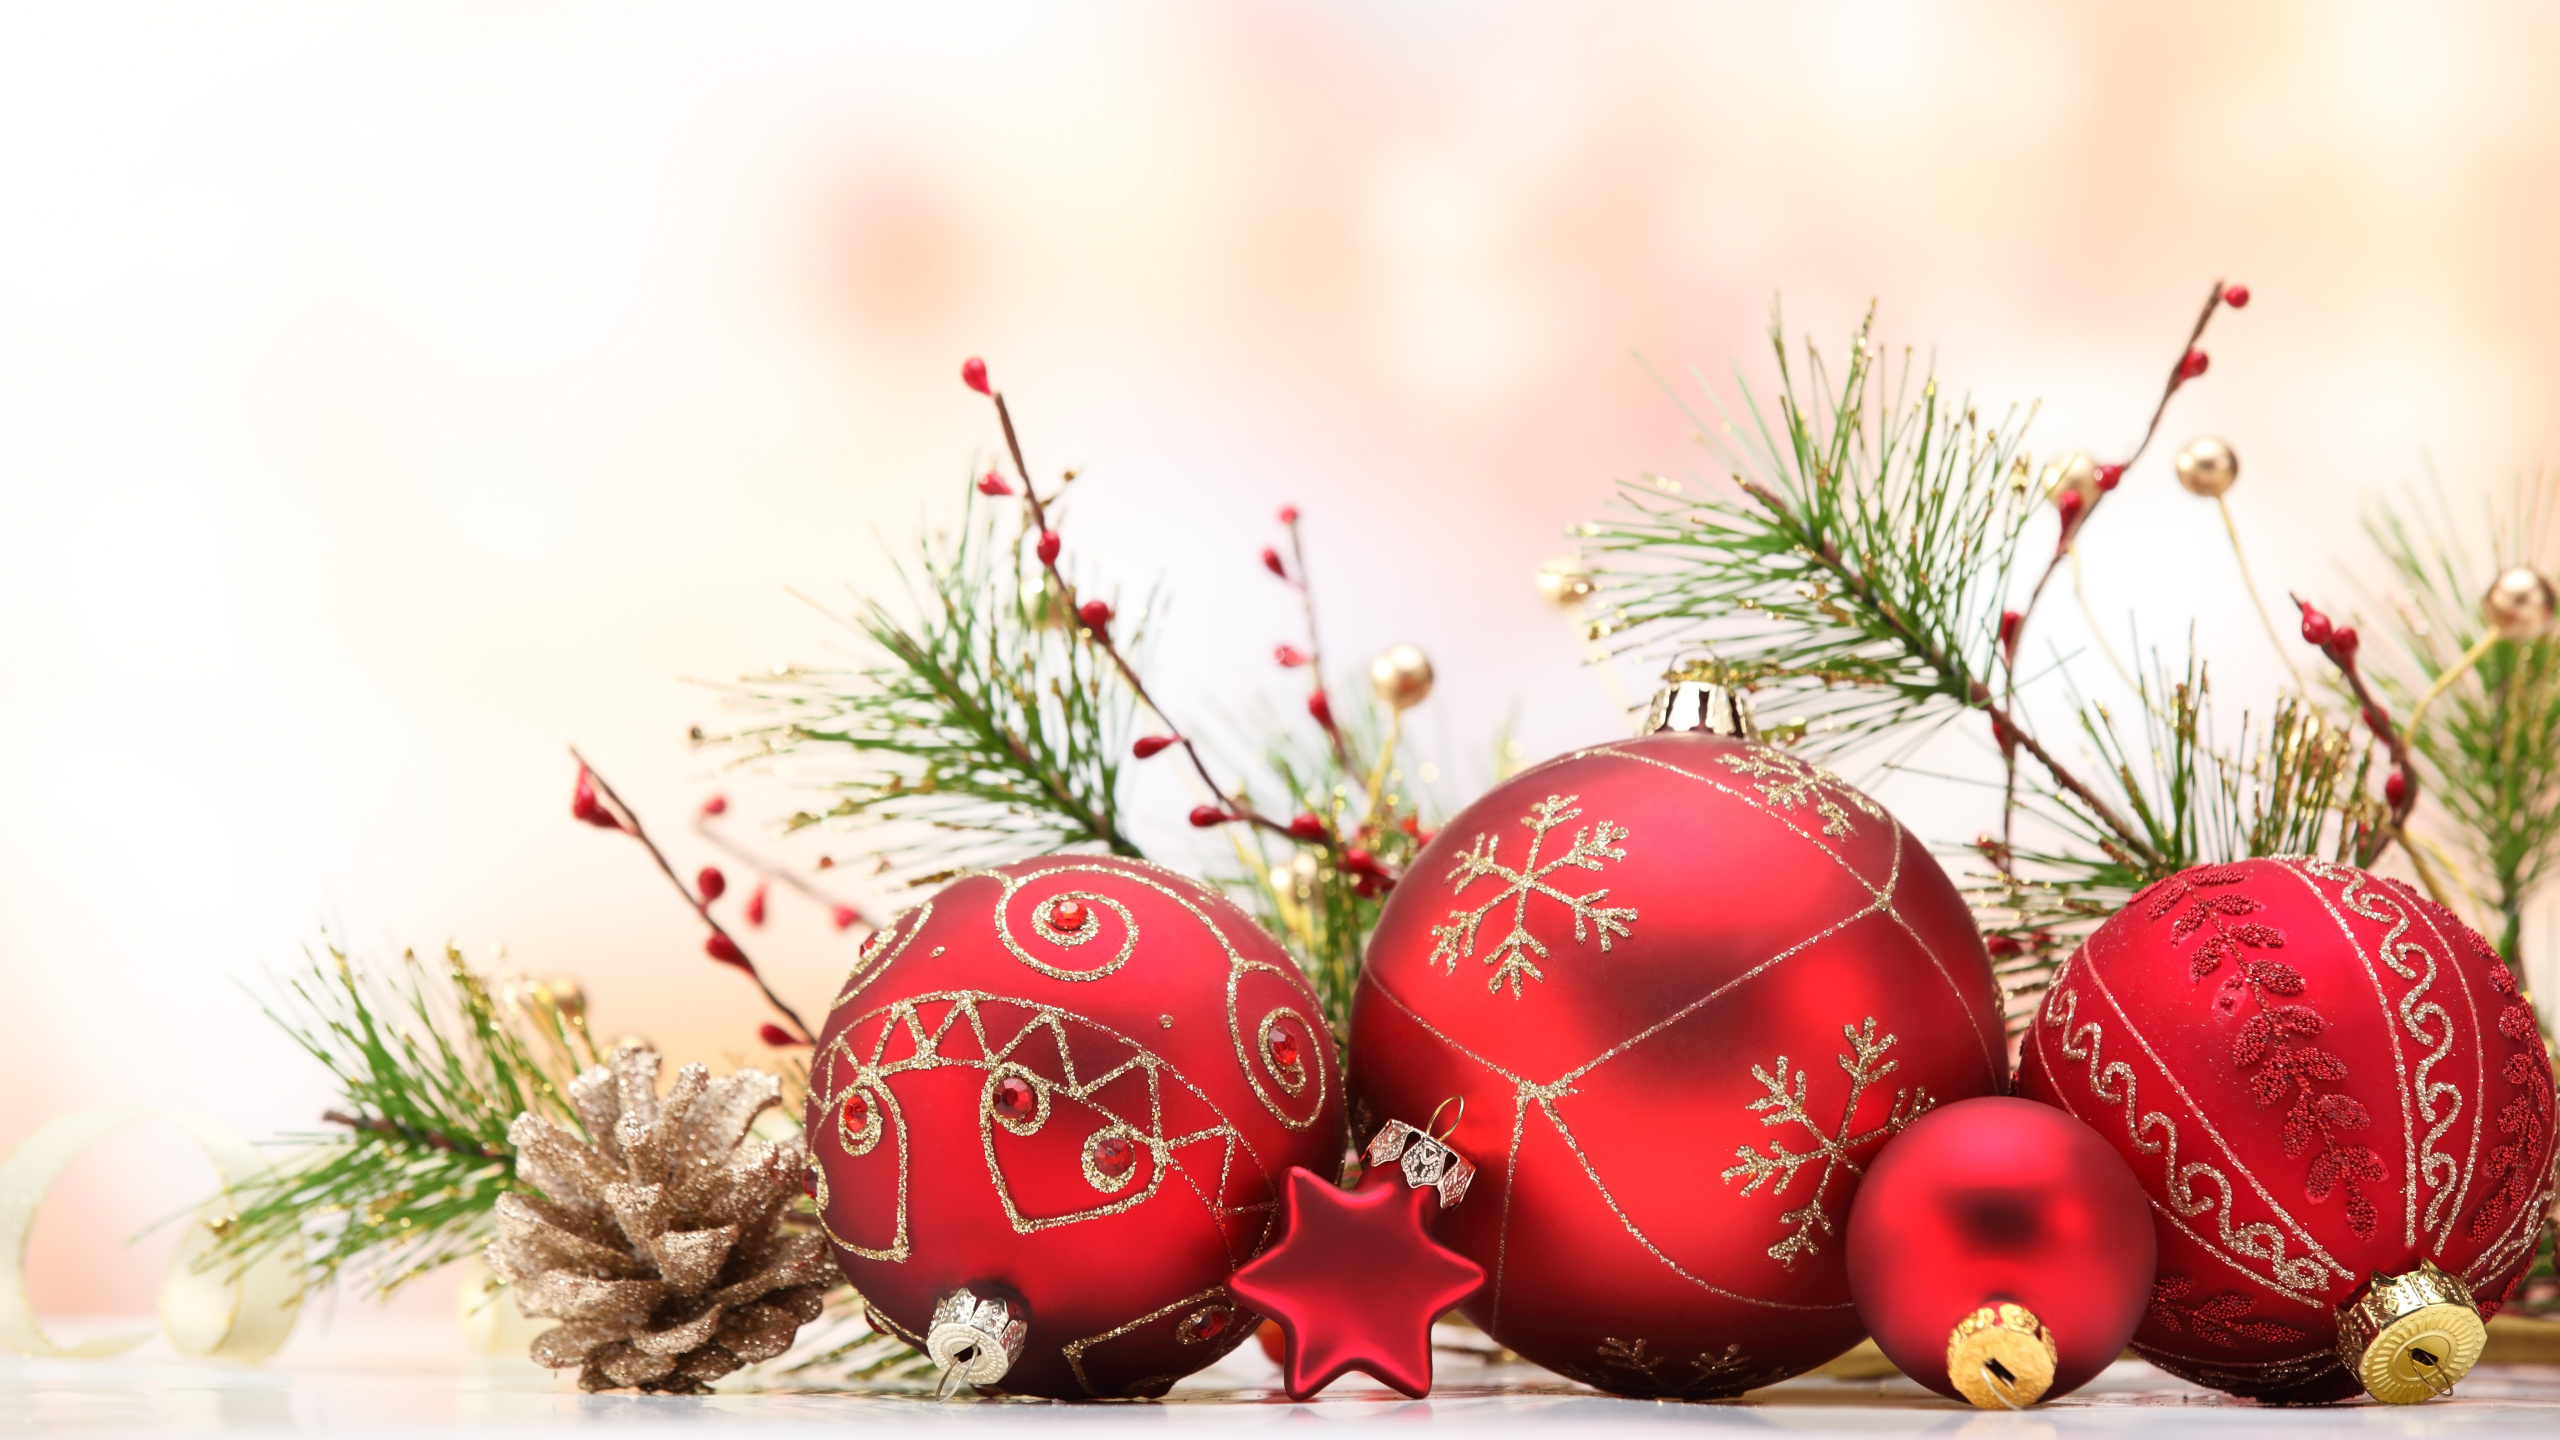 El Día De Navidad, Decoración de la Navidad, Adorno de Navidad, Santa Claus, Navidad. Wallpaper in 2560x1440 Resolution